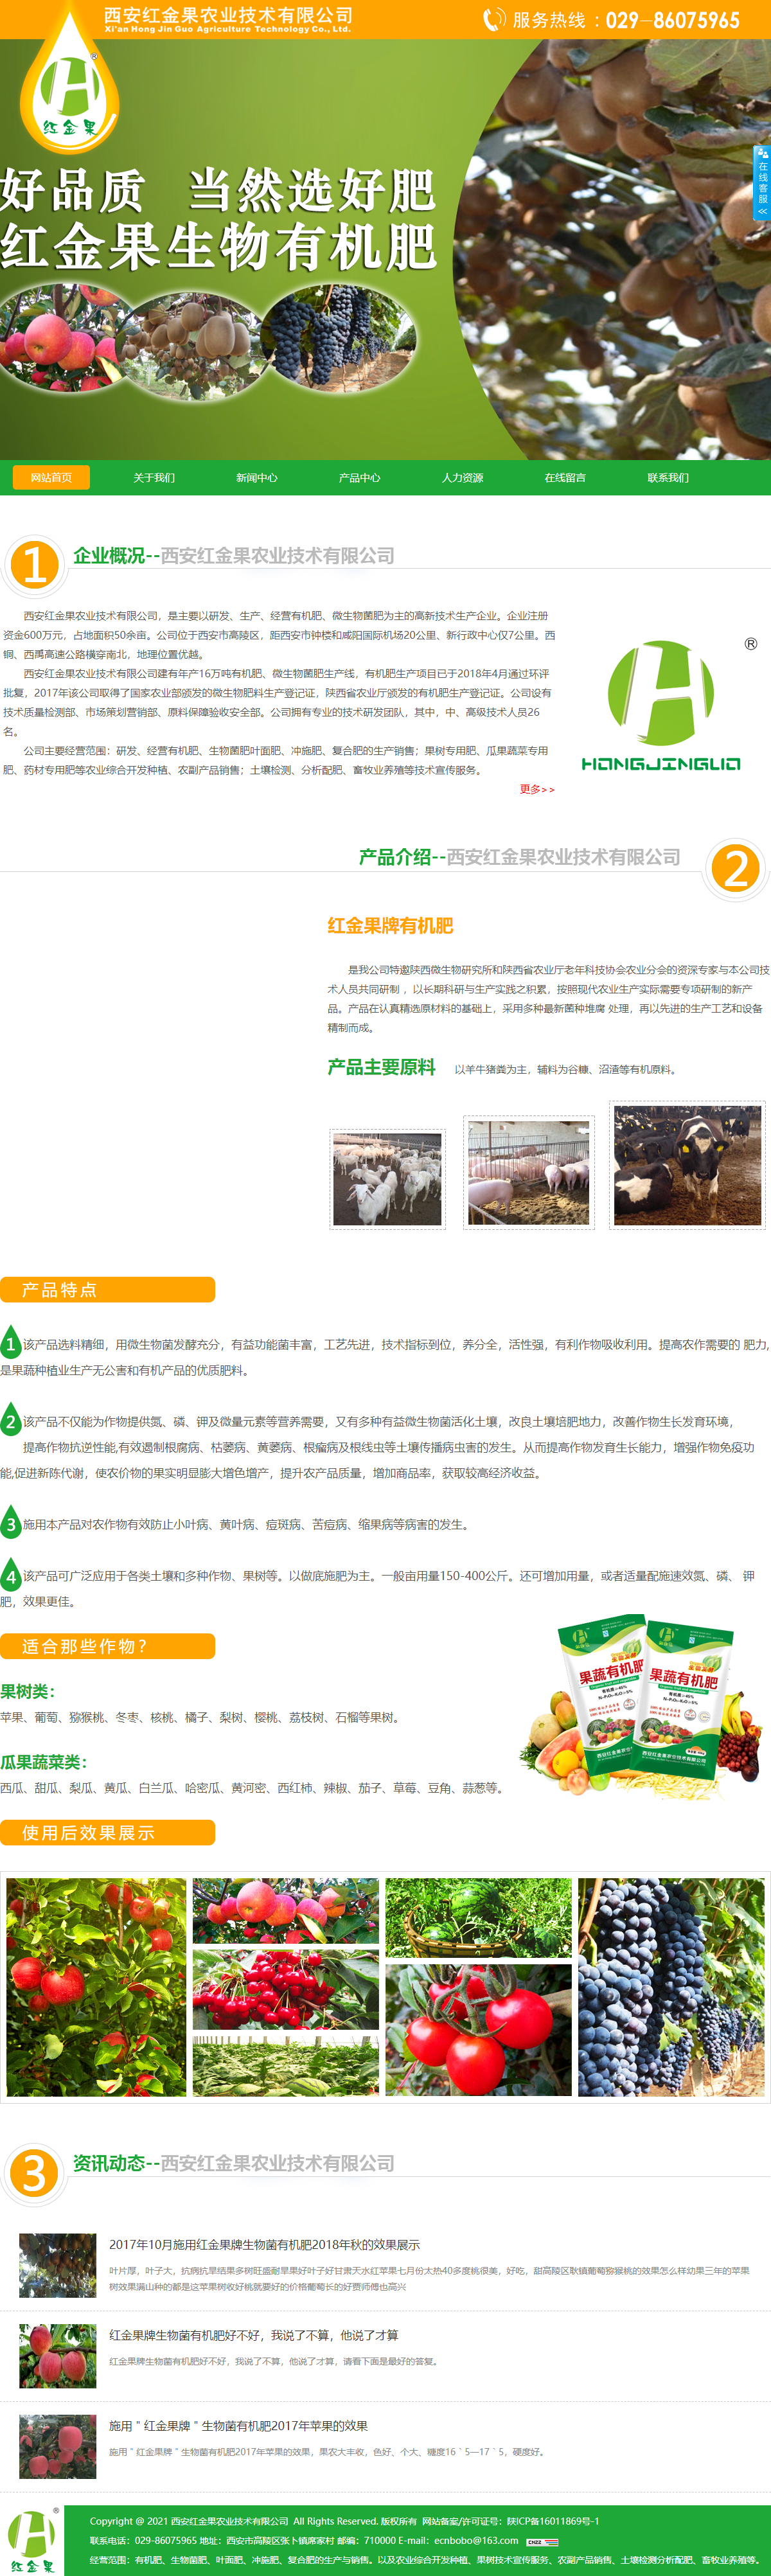 西安红金果农业技术有限公司网站案例